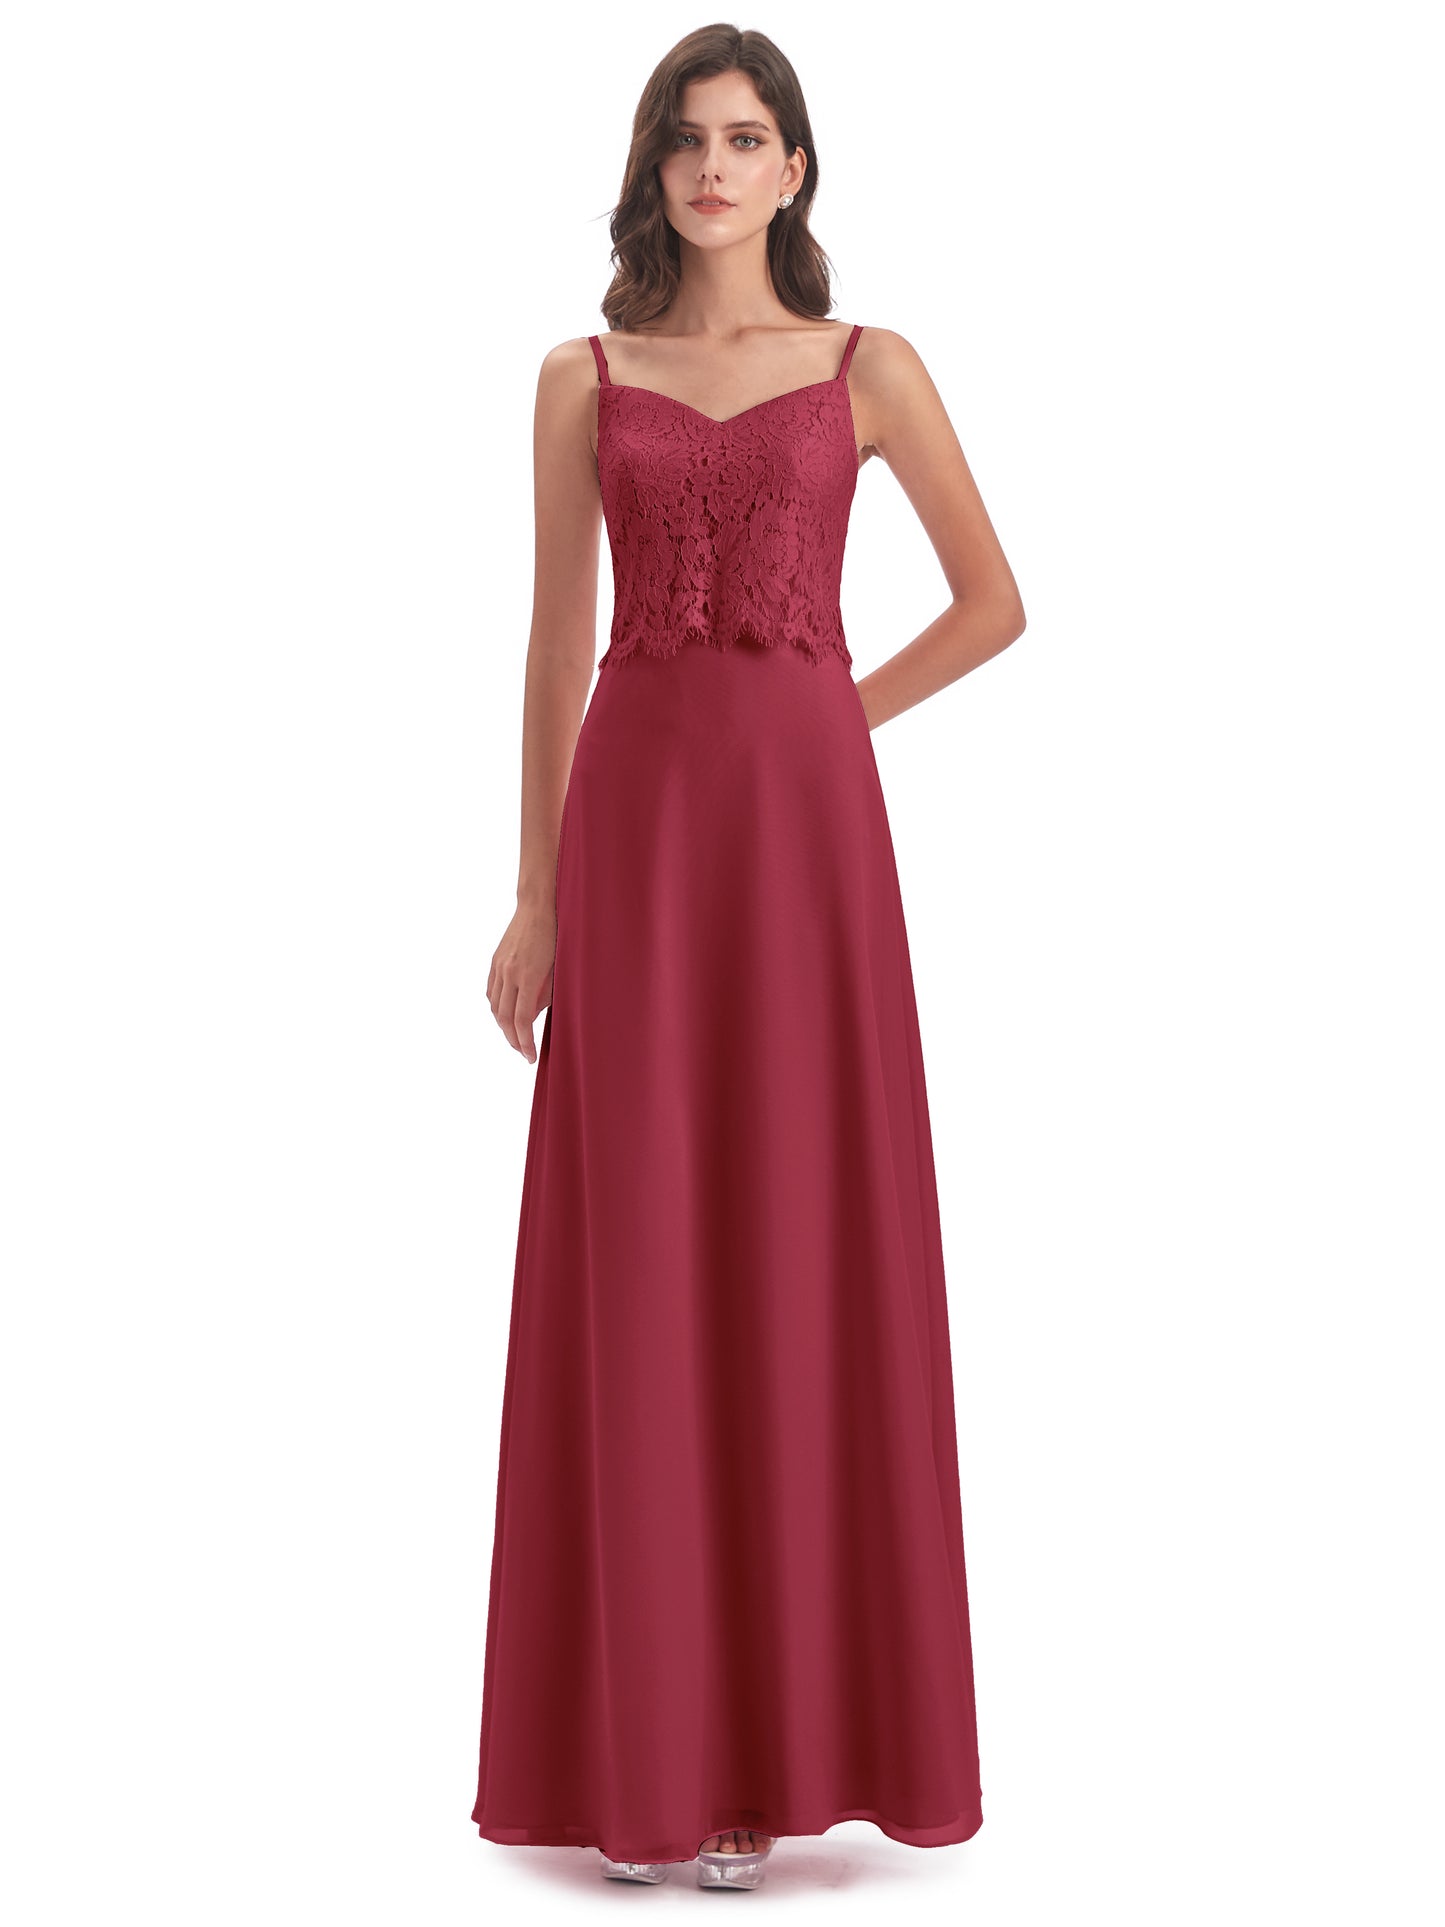 Grace Column Spaghetti Straps Lace Bridesmaid Dresses